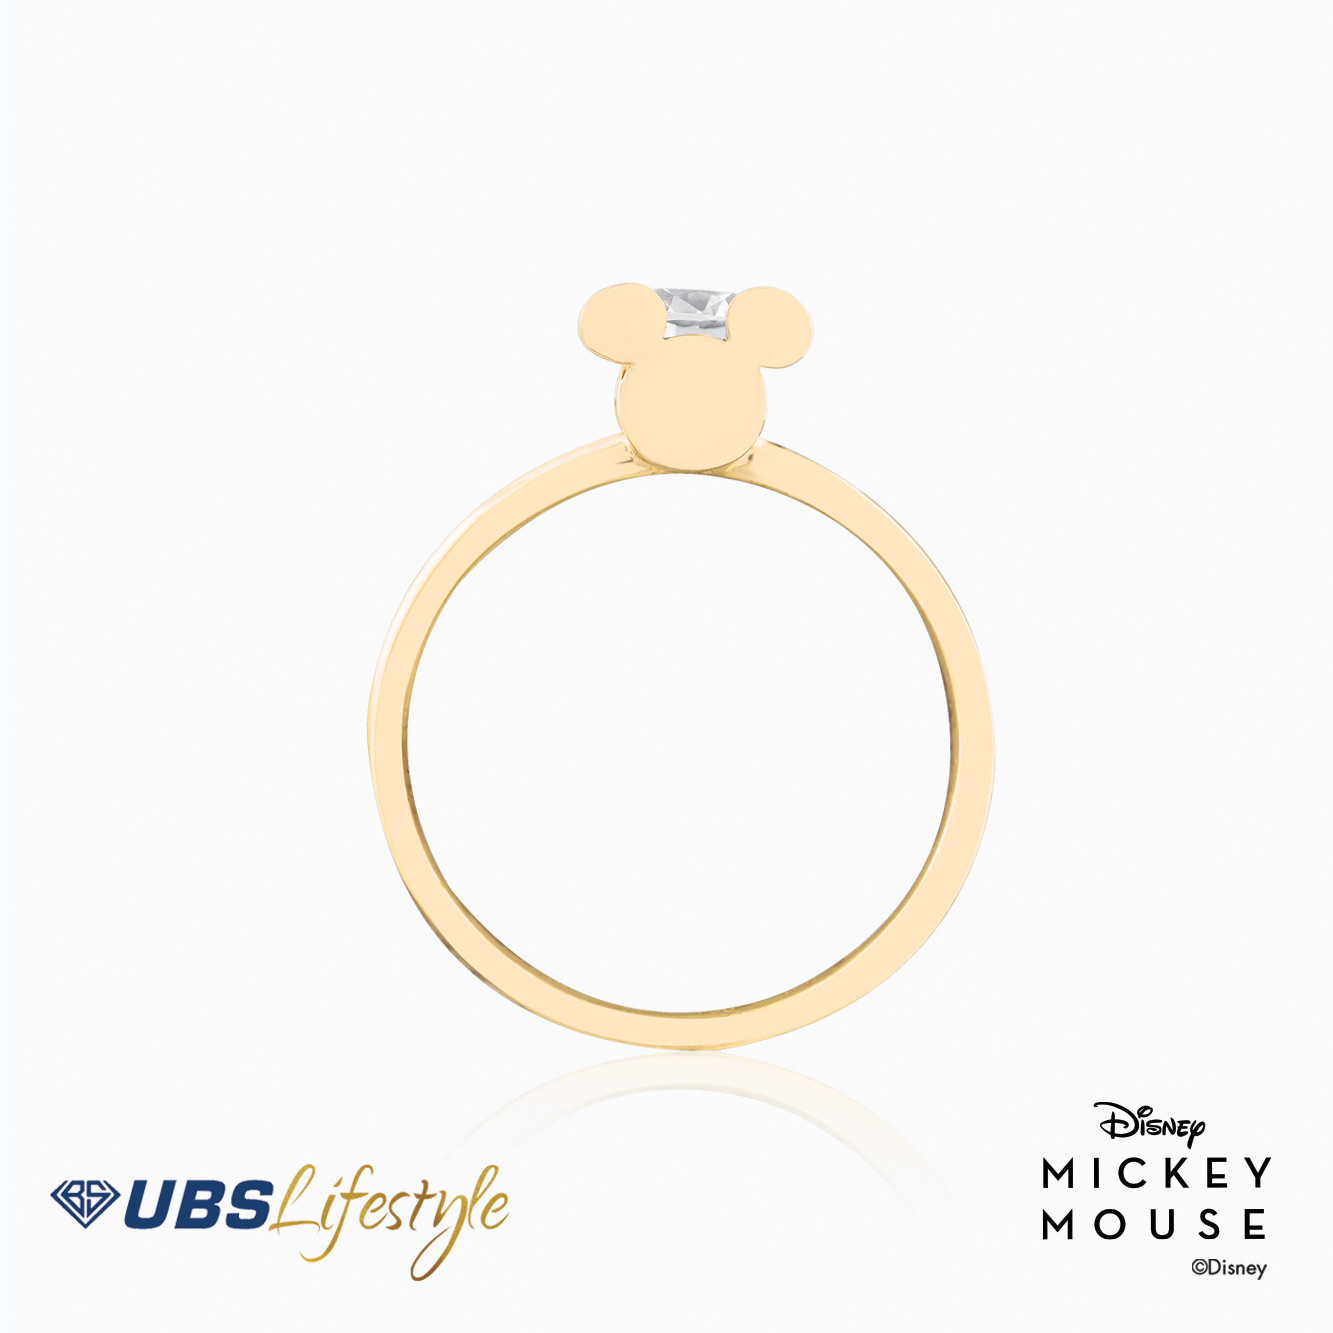 UBS Cincin Emas Disney Mickey Mouse - Ccy0142Y - 17K